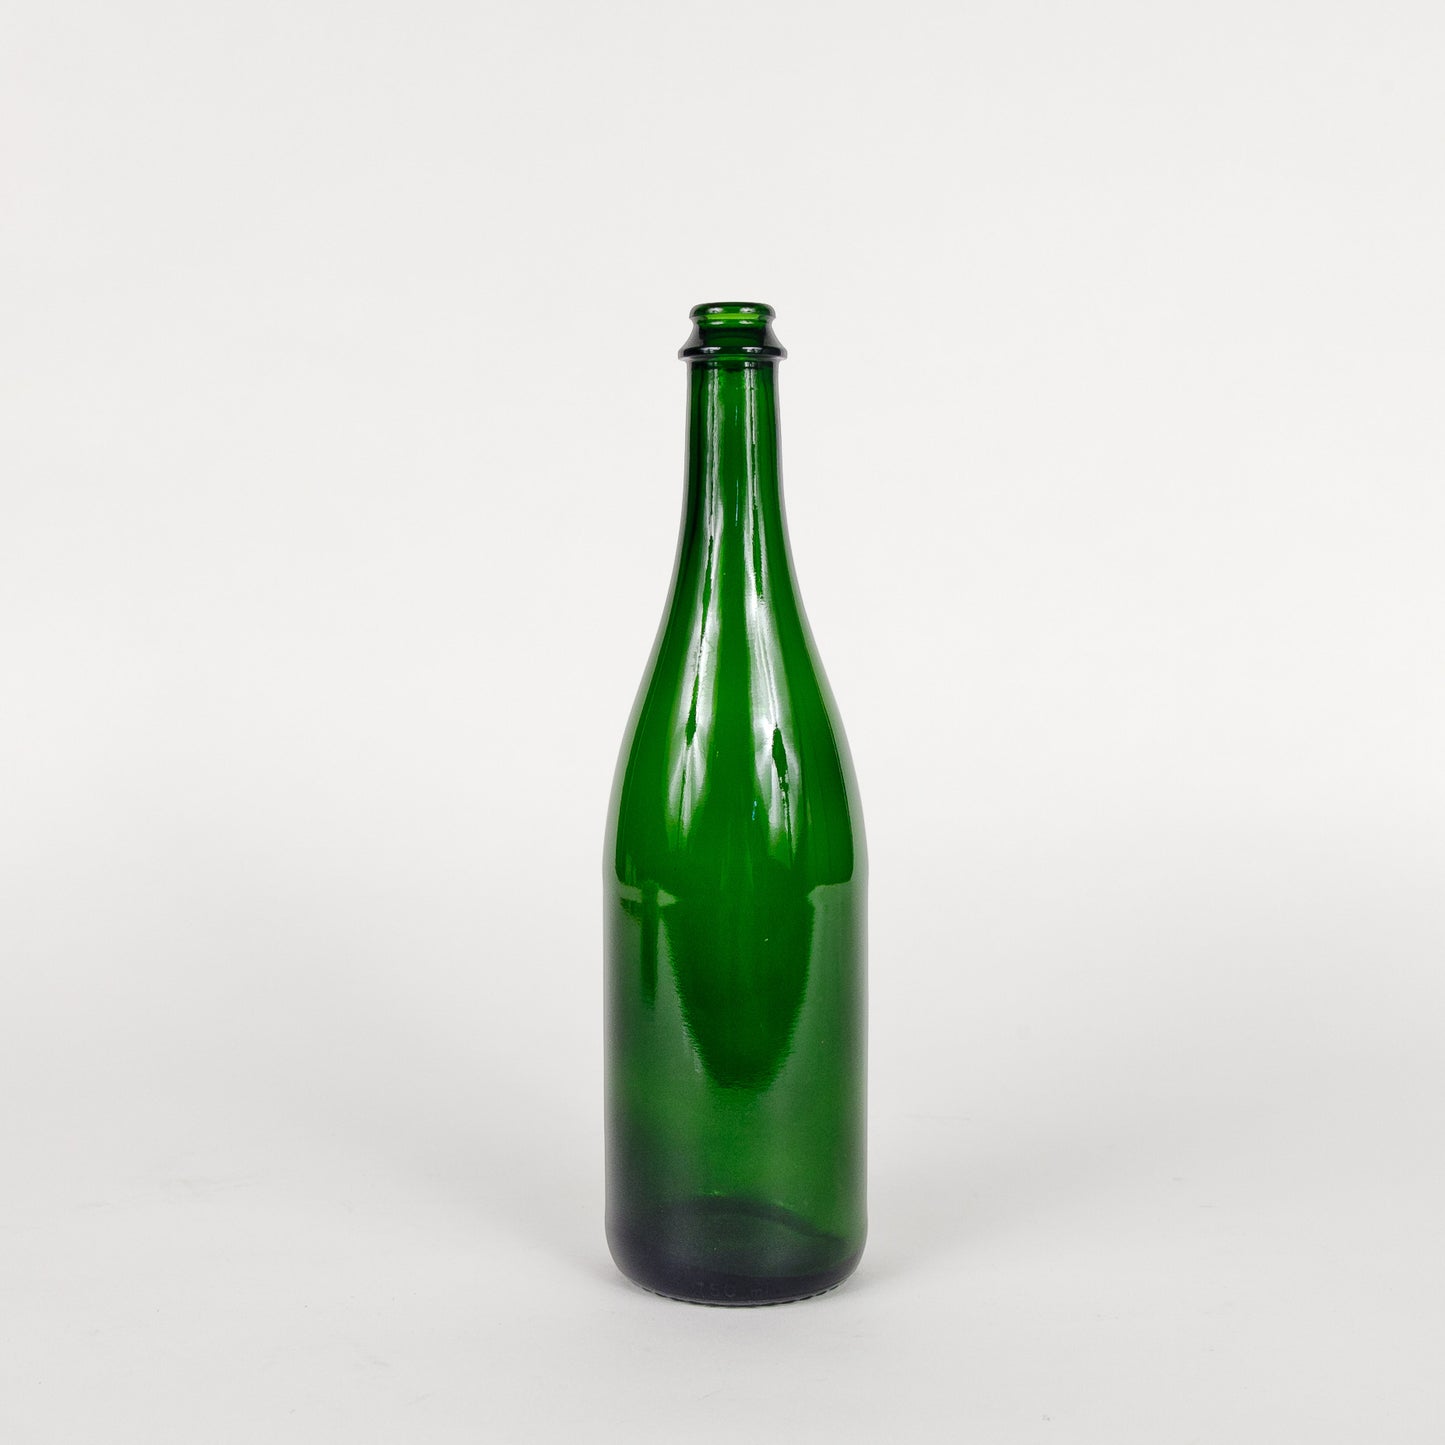 Champagne Bottle - Green - 750 mL - Single